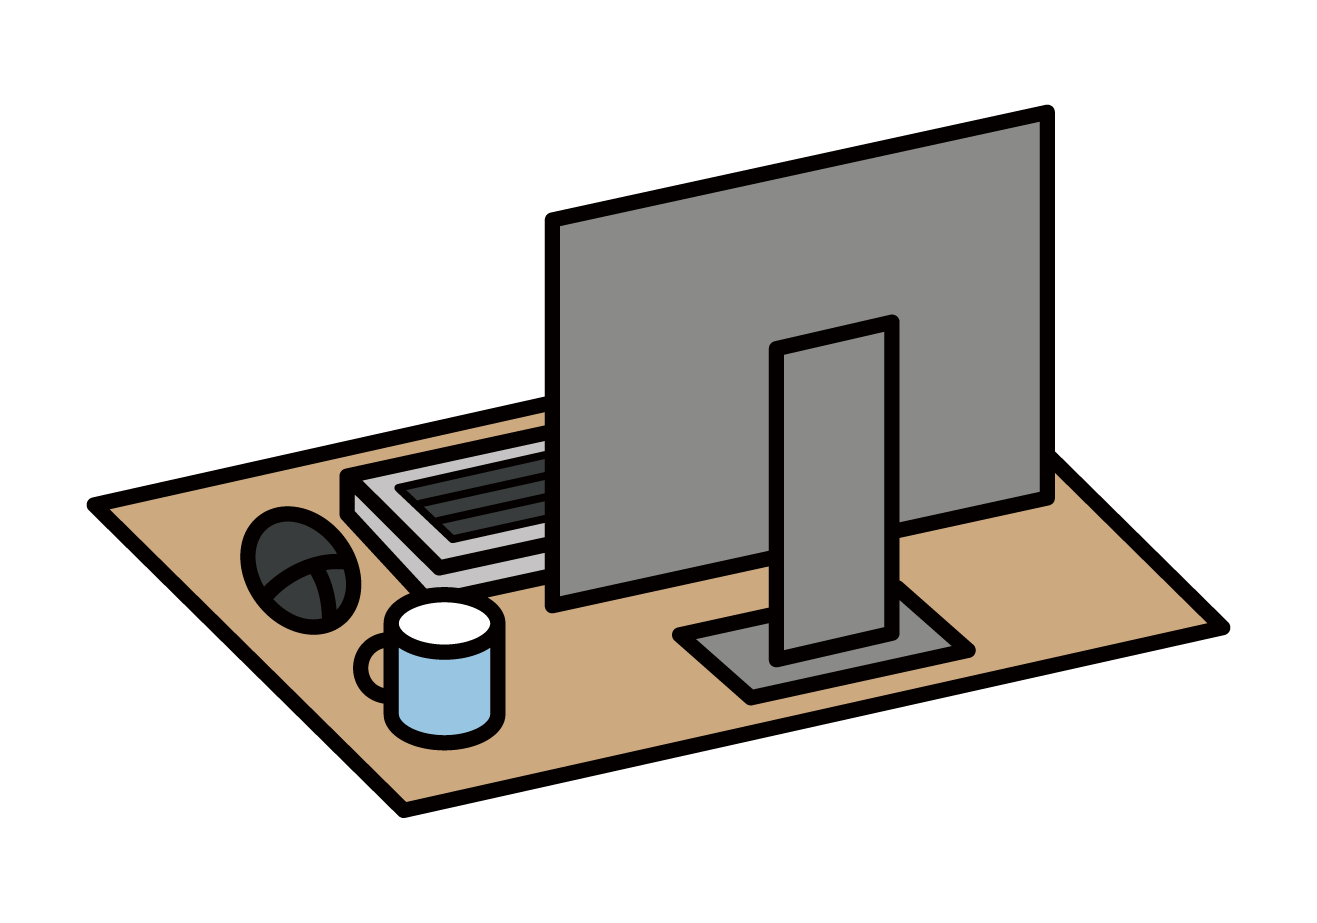 업무용 책상과 컴퓨터 책상의 그림